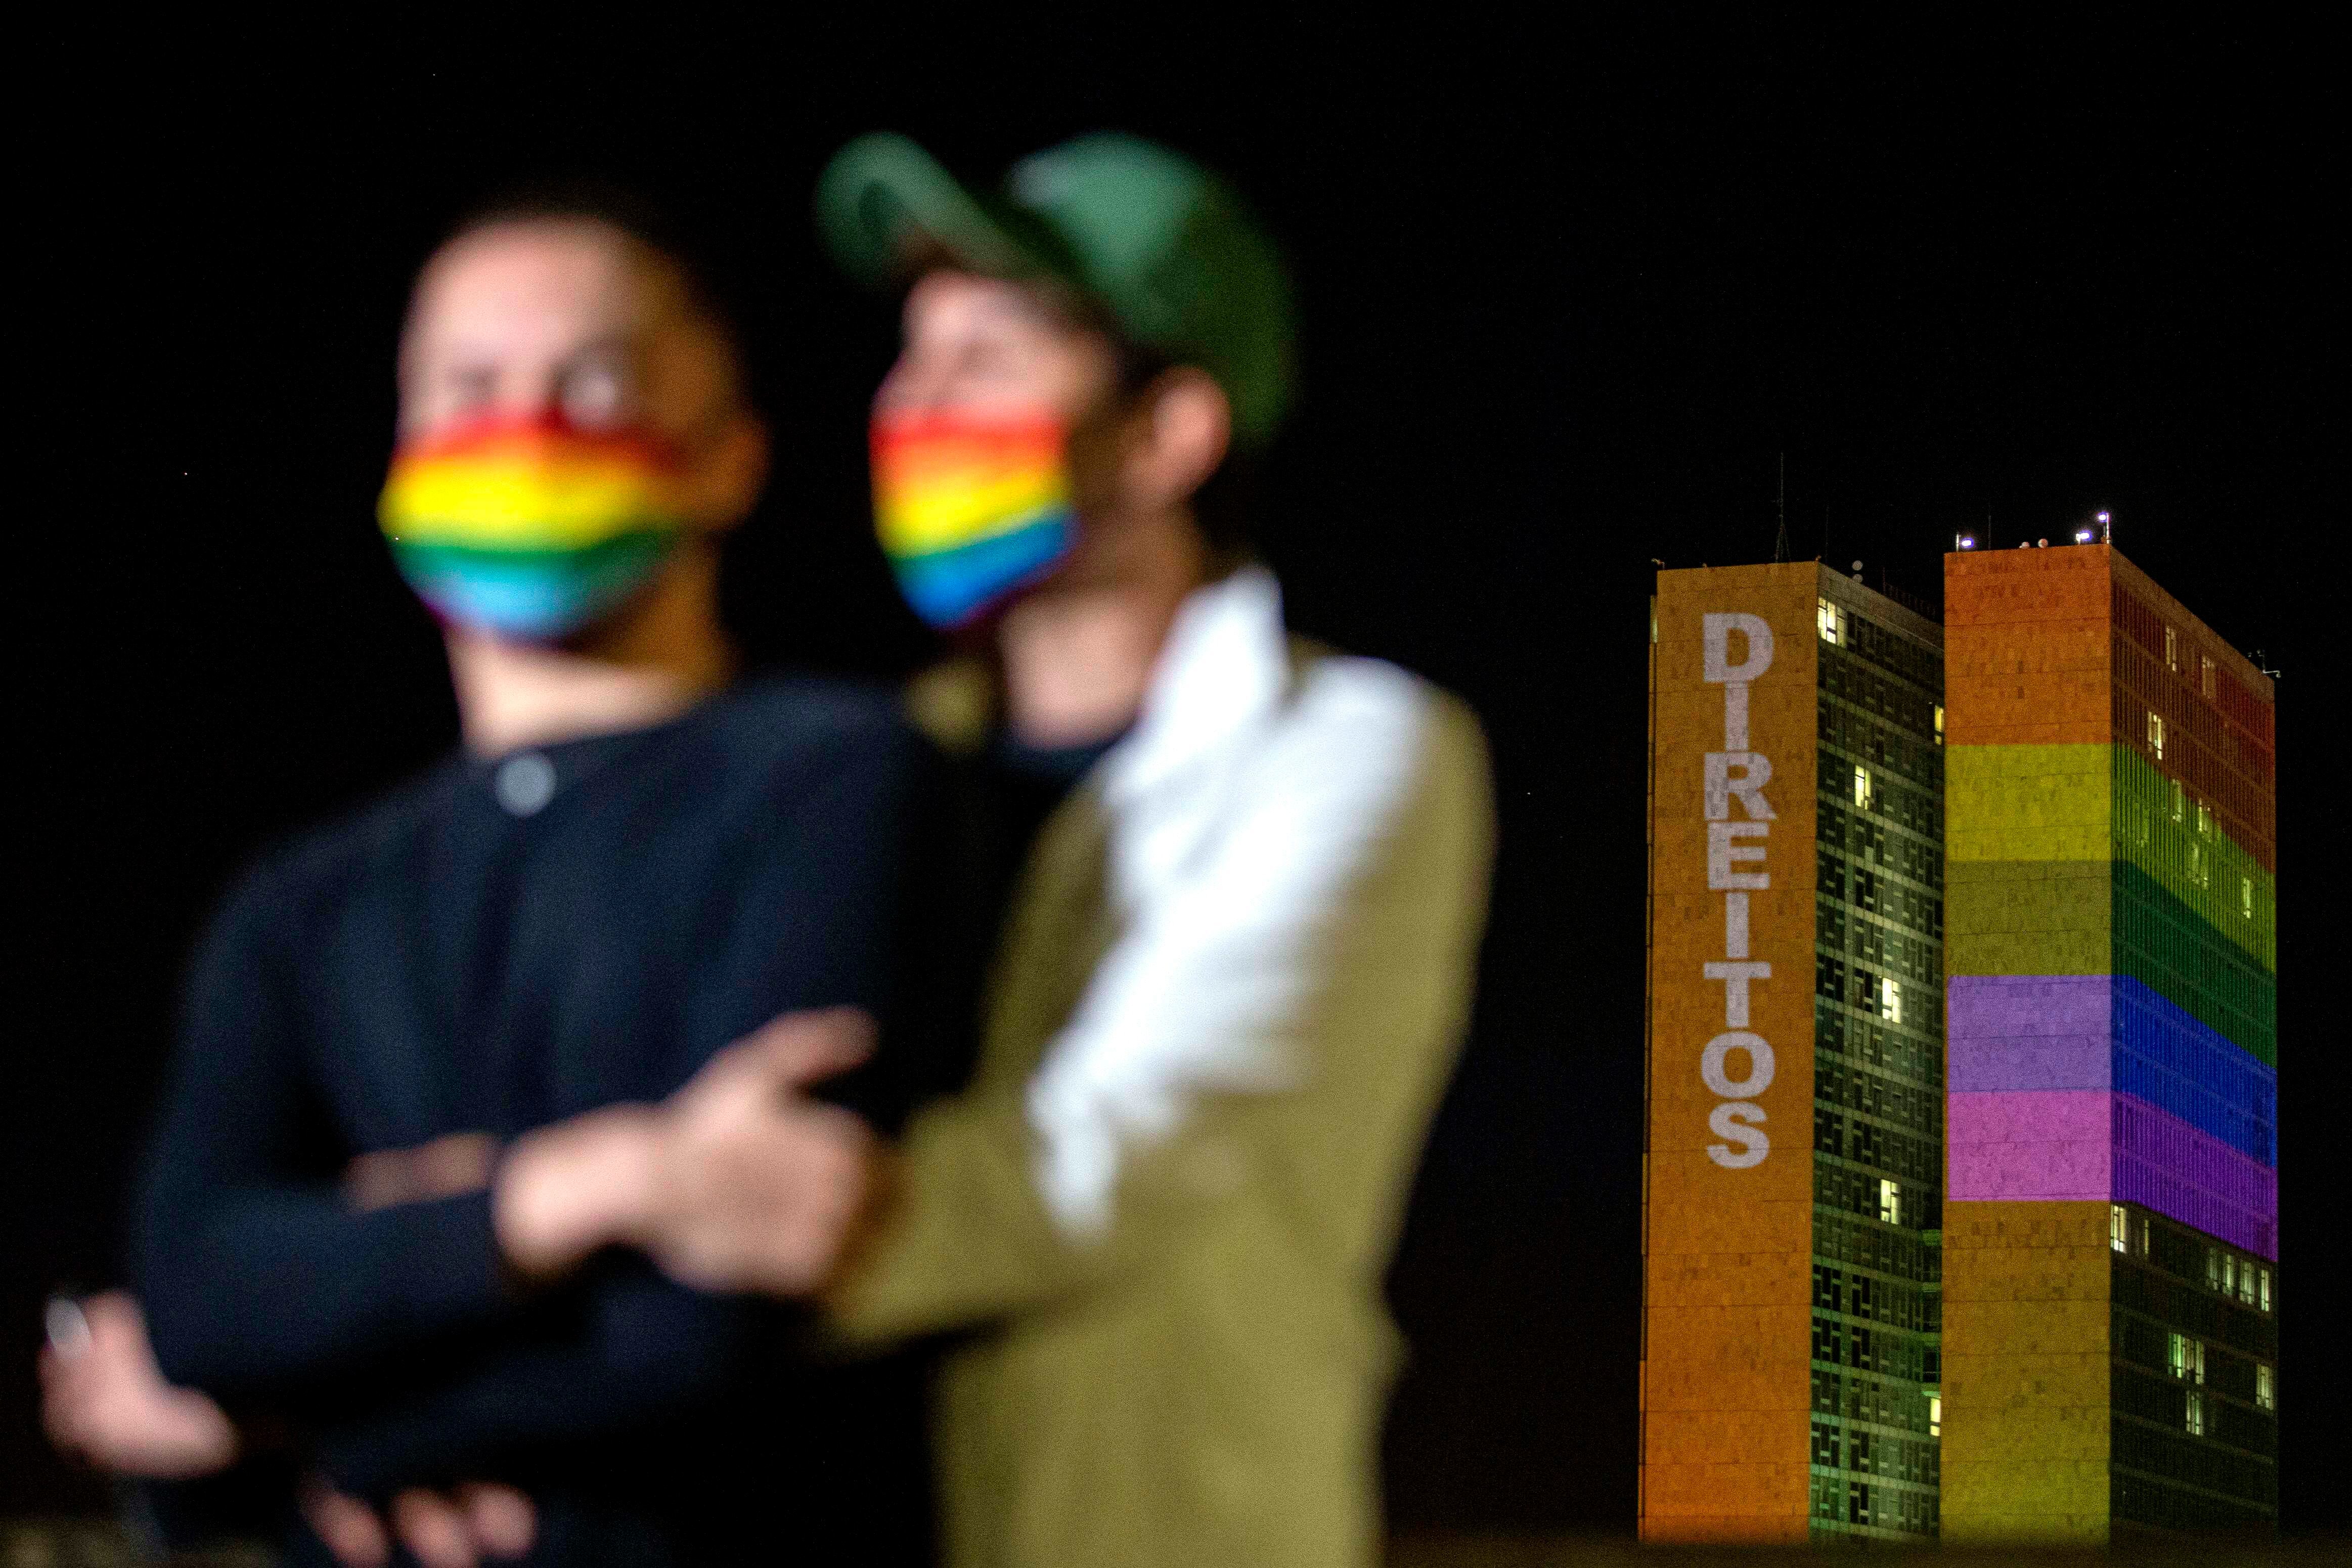 Los colores del arcoiris, la bandera del movimiento LGBTI, iluminaban la sede del Congreso Nacional de Brasil y proyectaban la palabra ""Derechos"" mientras una pareja protegida con mascarillas con los colores se abrazaban, en una conmemoración silenciosa y sin público del Día Internacional del Orgullo, en Brasilia (Brasil), el pasado 28 de junio. EFE/ Myke Sena/Archivo